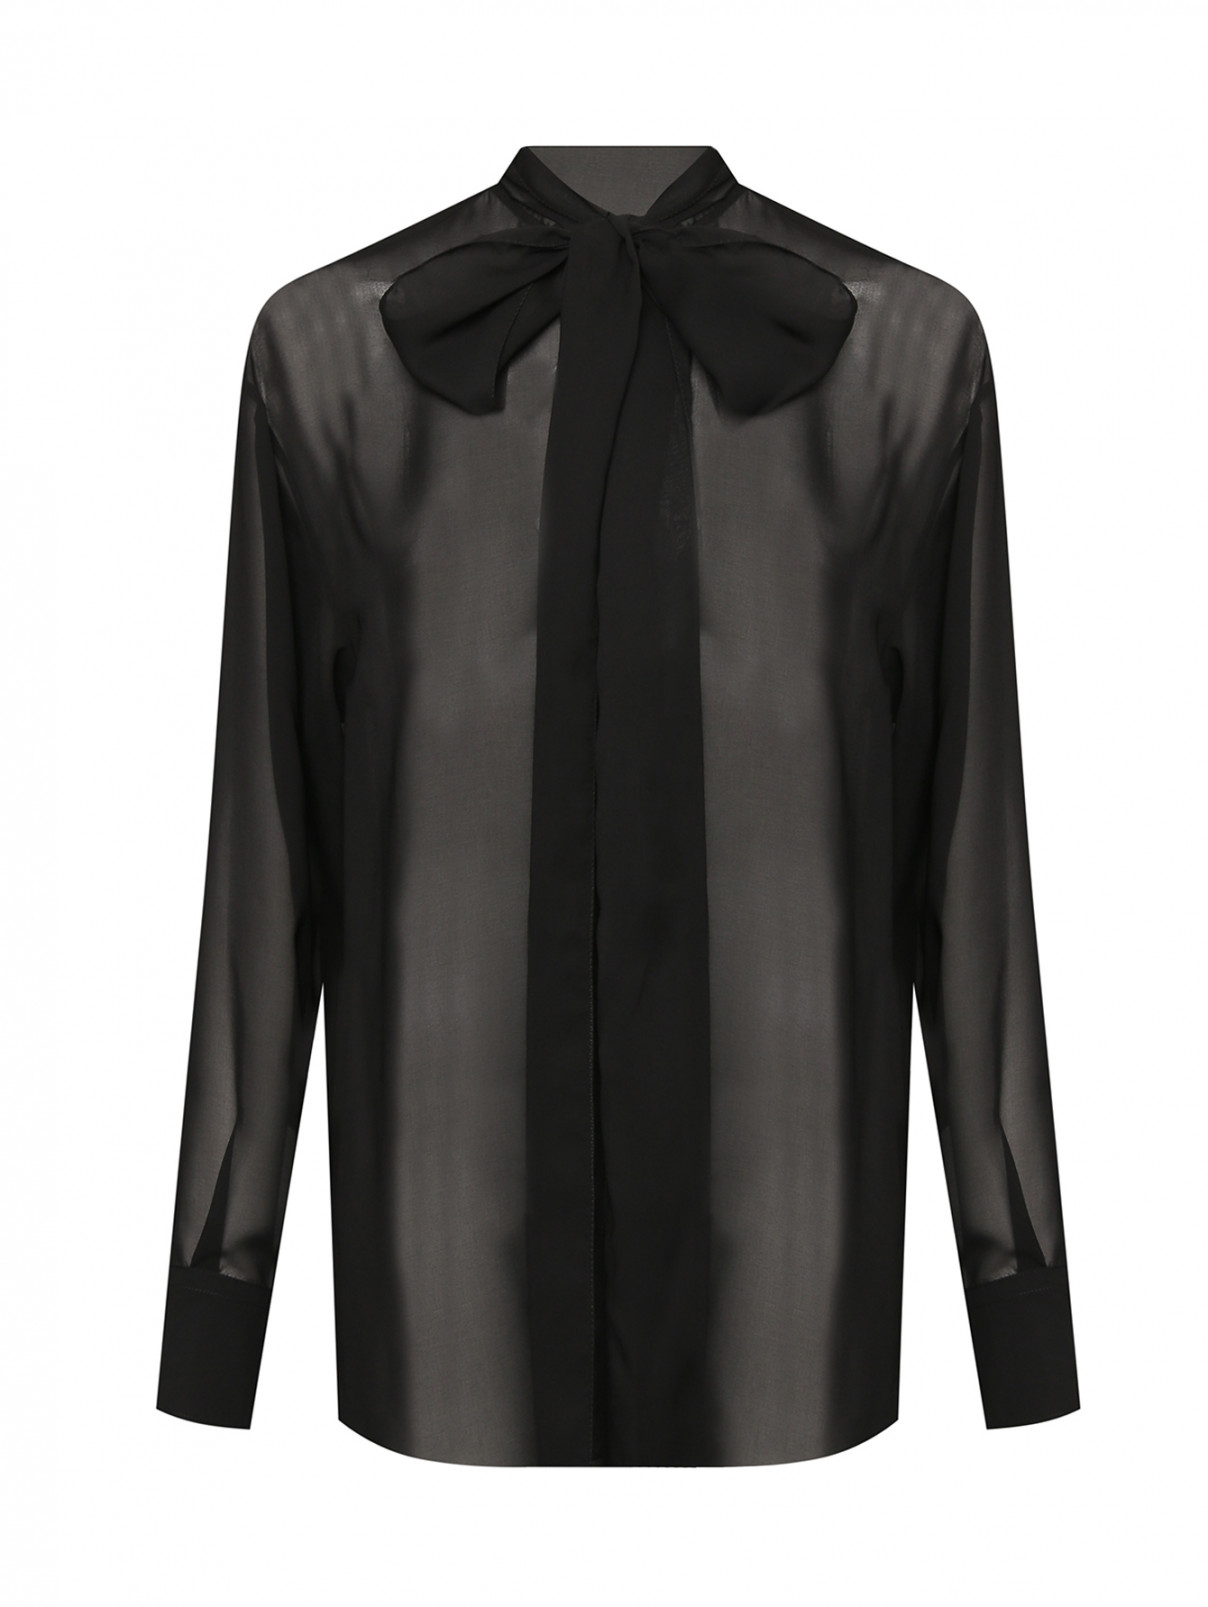 Полупрозрачная блуза с поясом Sportmax  –  Общий вид  – Цвет:  Черный